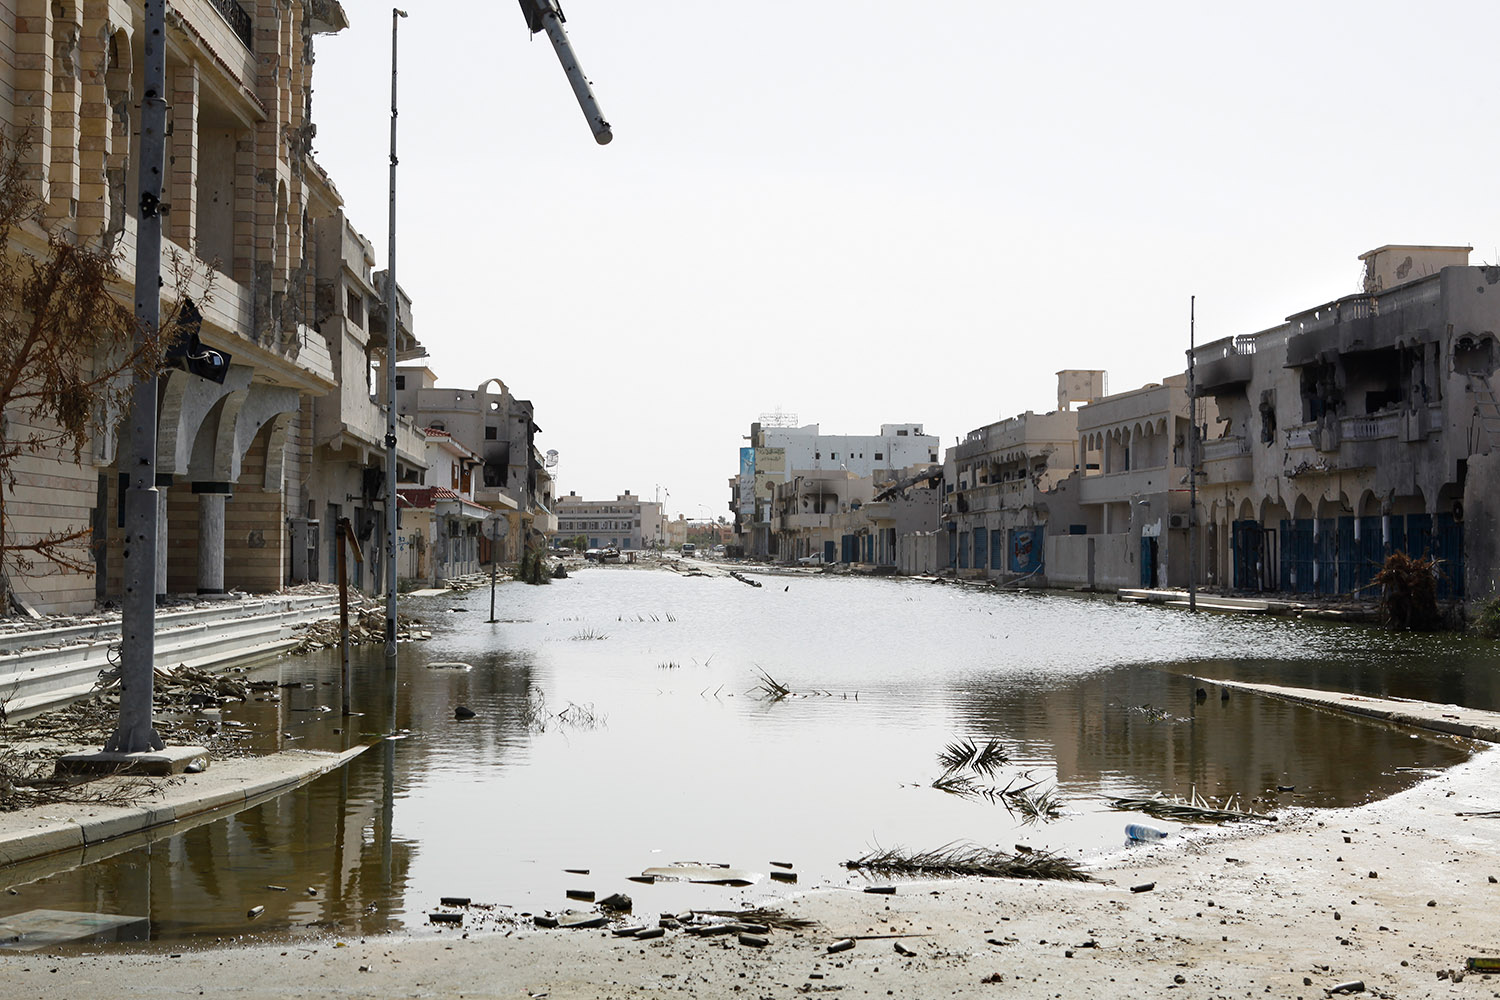 Vue de la ville de Syrte détruite et inondée.